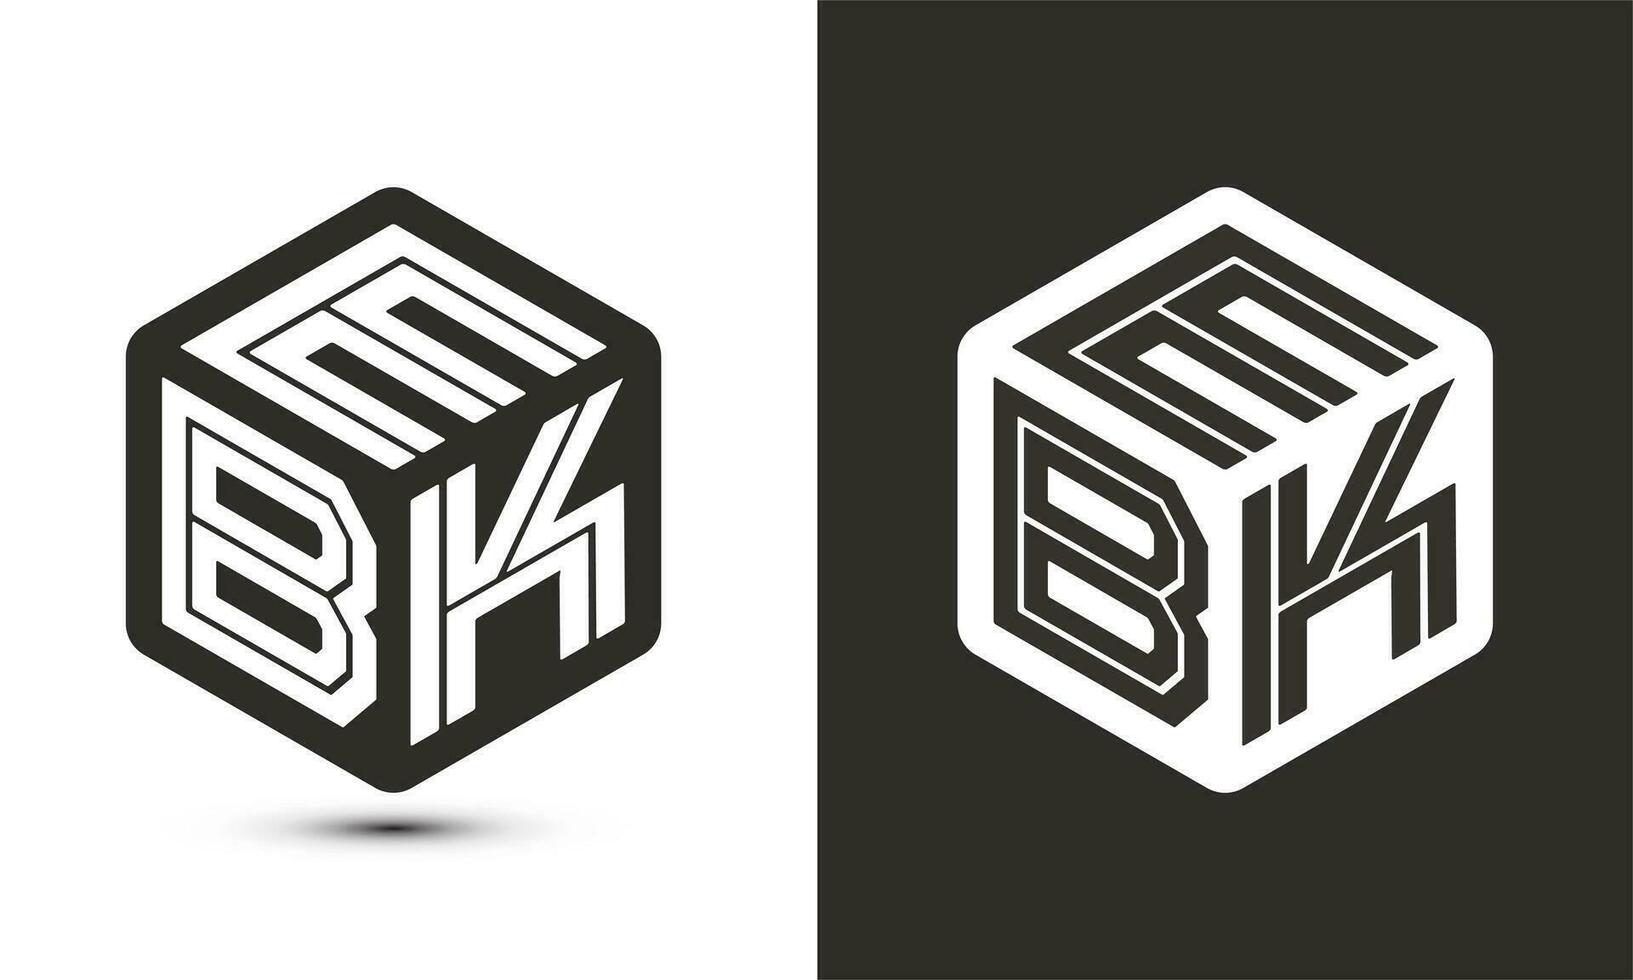 eb lettera logo design con illustratore cubo logo, vettore logo moderno alfabeto font sovrapposizione stile.